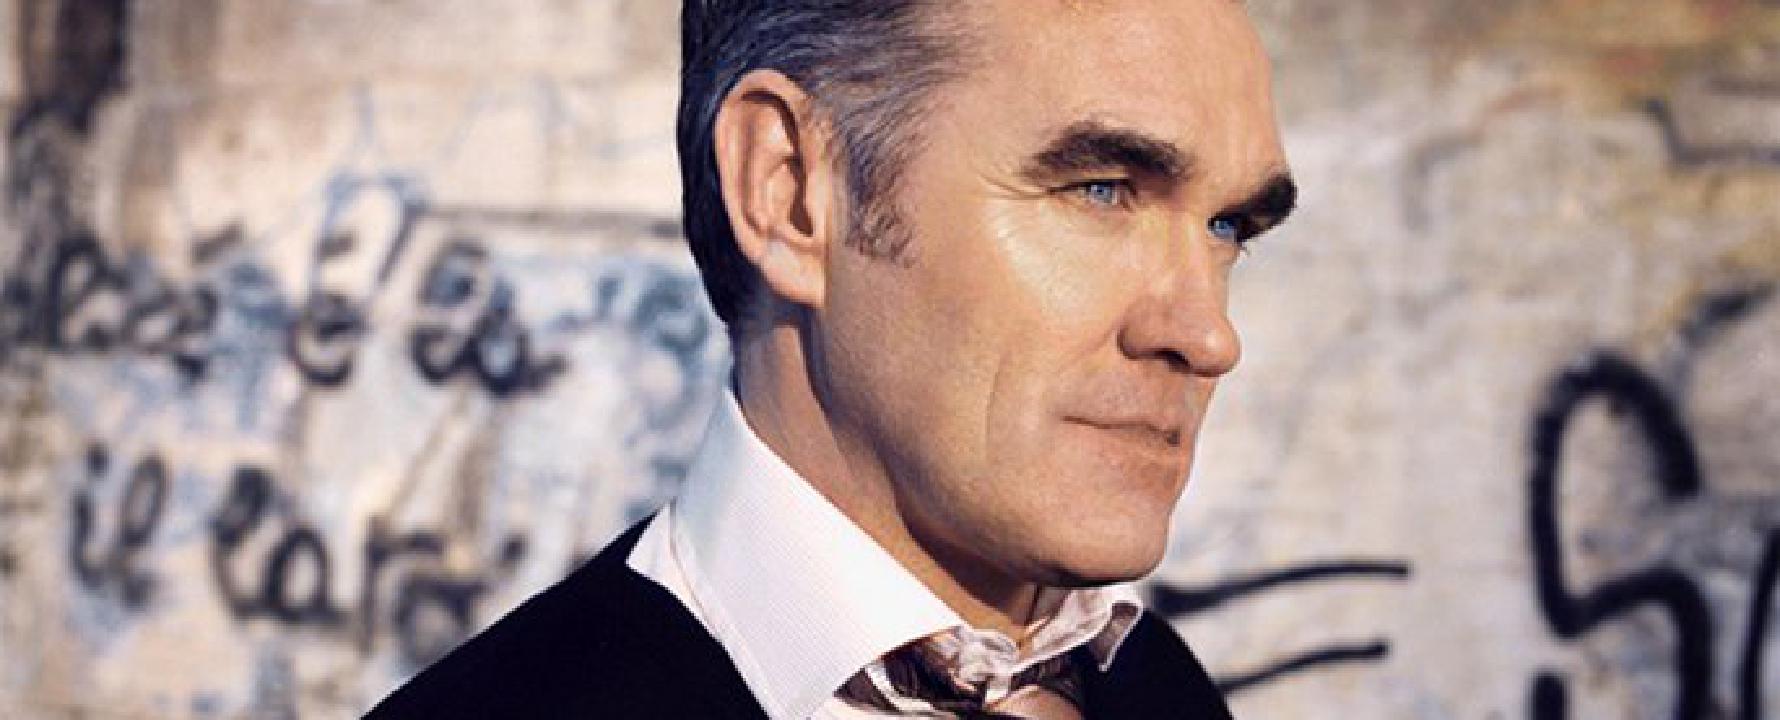 Fotografia promocional de Morrissey.